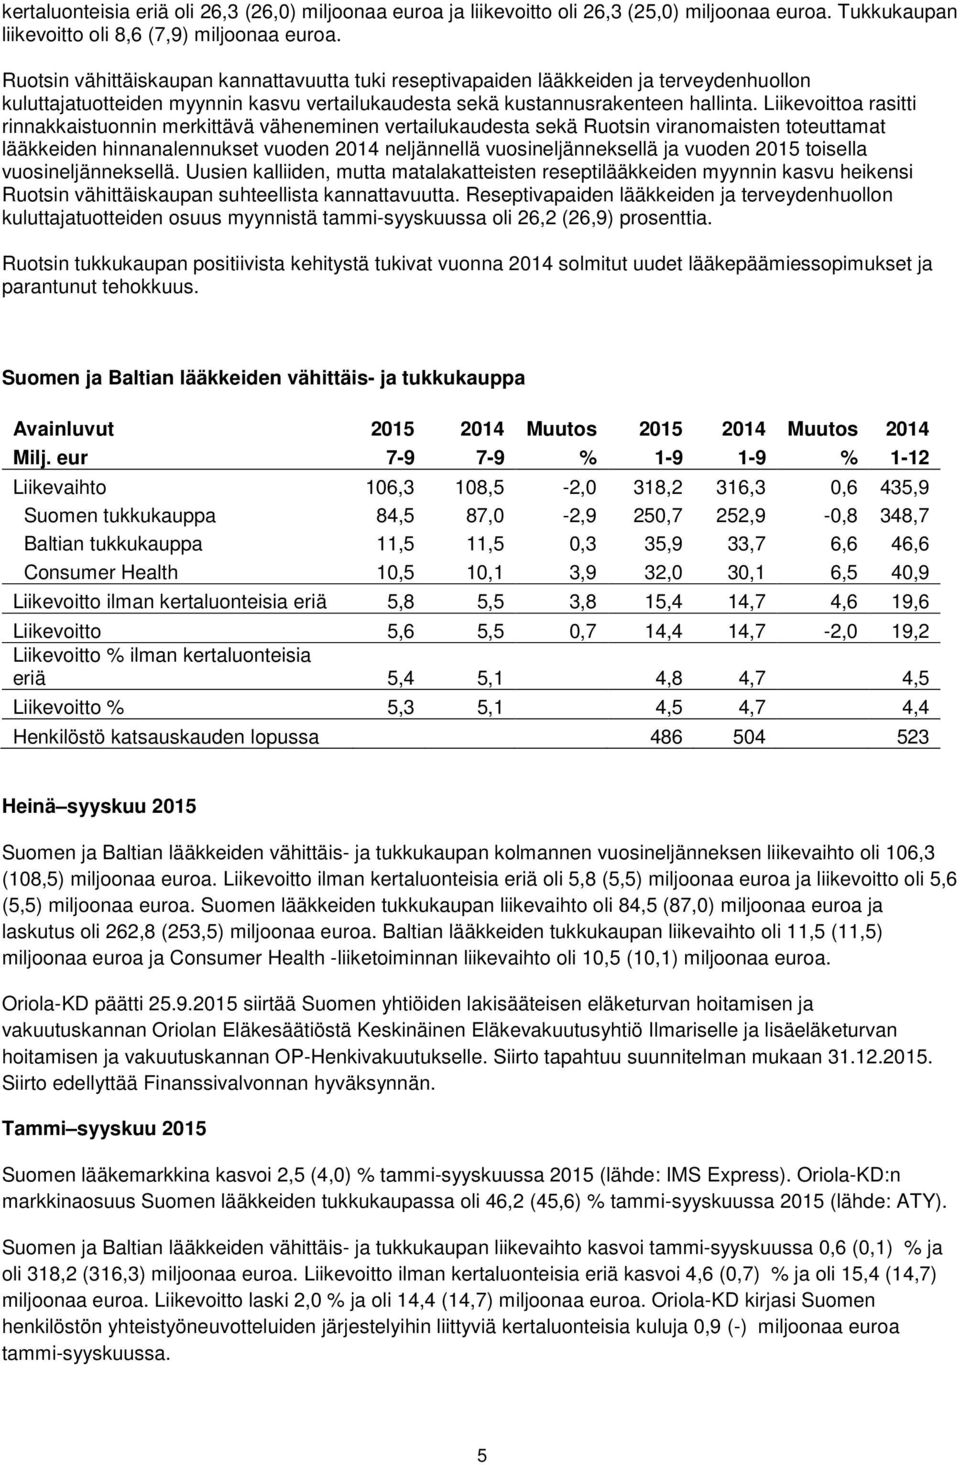 Liikevoittoa rasitti rinnakkaistuonnin merkittävä väheneminen vertailukaudesta sekä Ruotsin viranomaisten toteuttamat lääkkeiden hinnanalennukset vuoden 2014 neljännellä vuosineljänneksellä ja vuoden